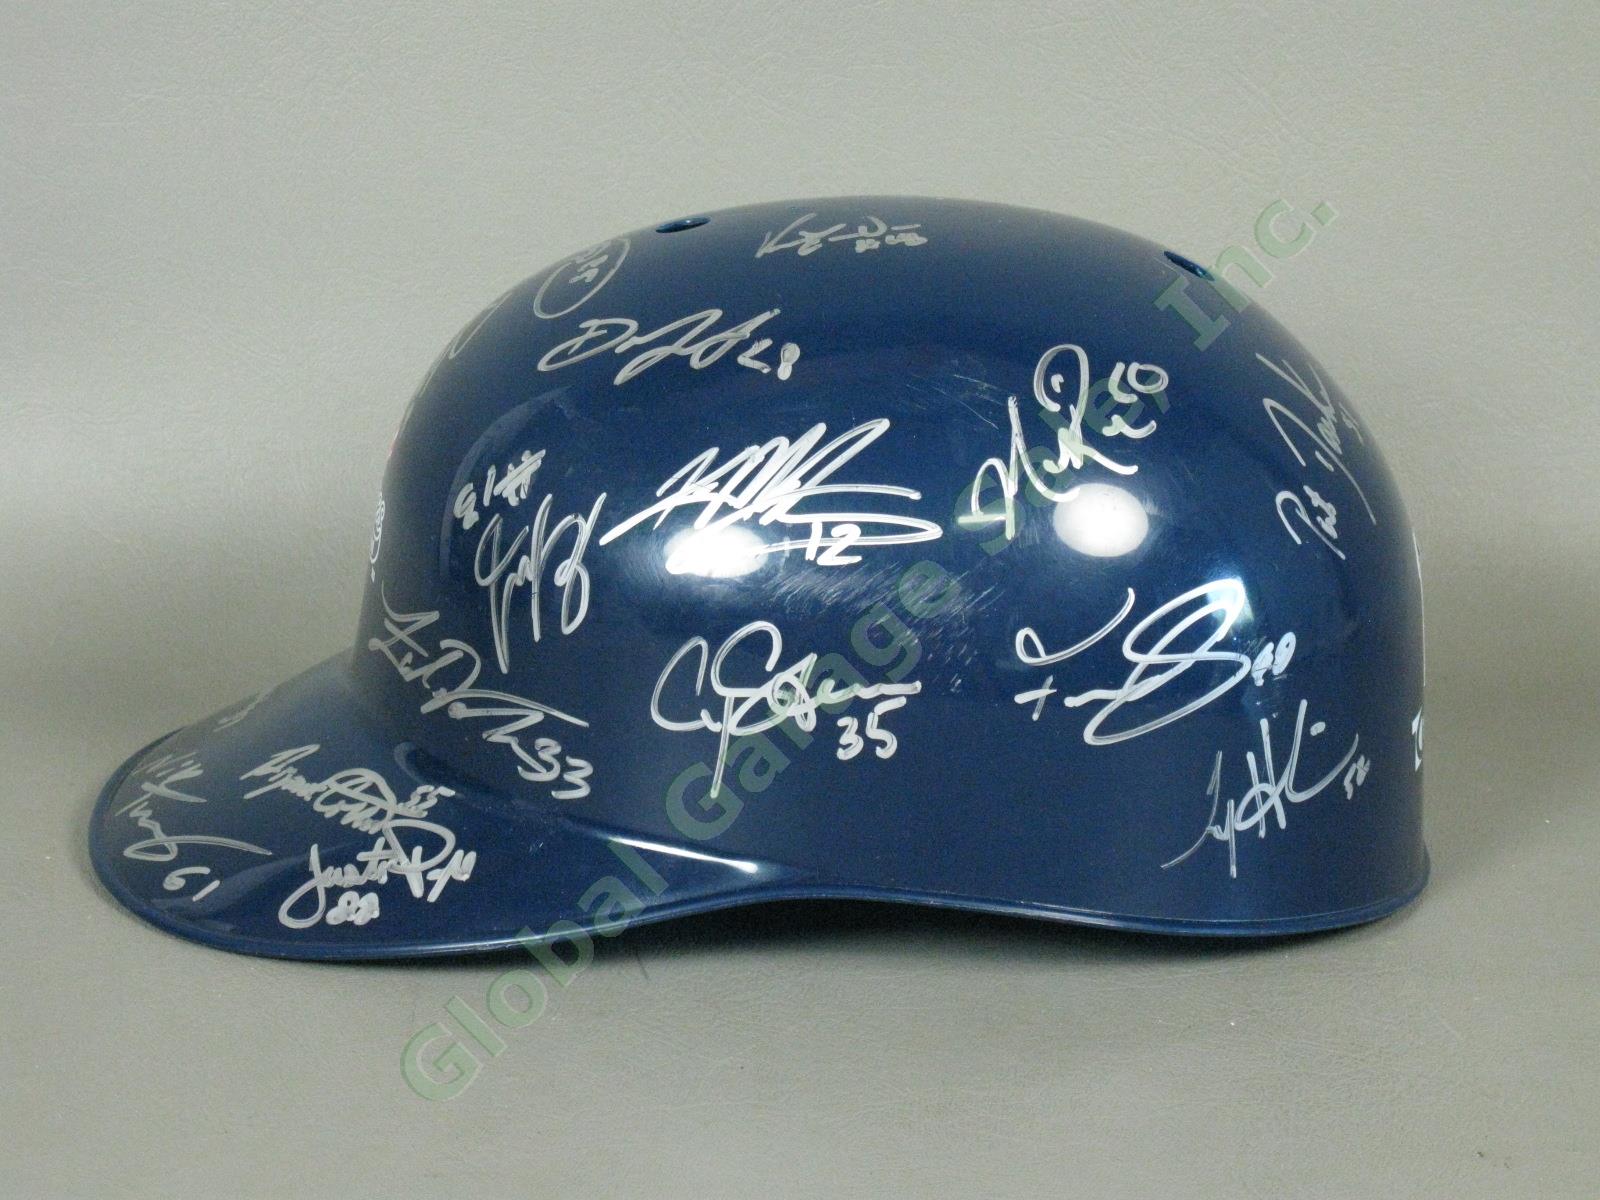 2010 Staten Island Yankees Team Signed Baseball Helmet MiLB MLB NYPL New York NR 3